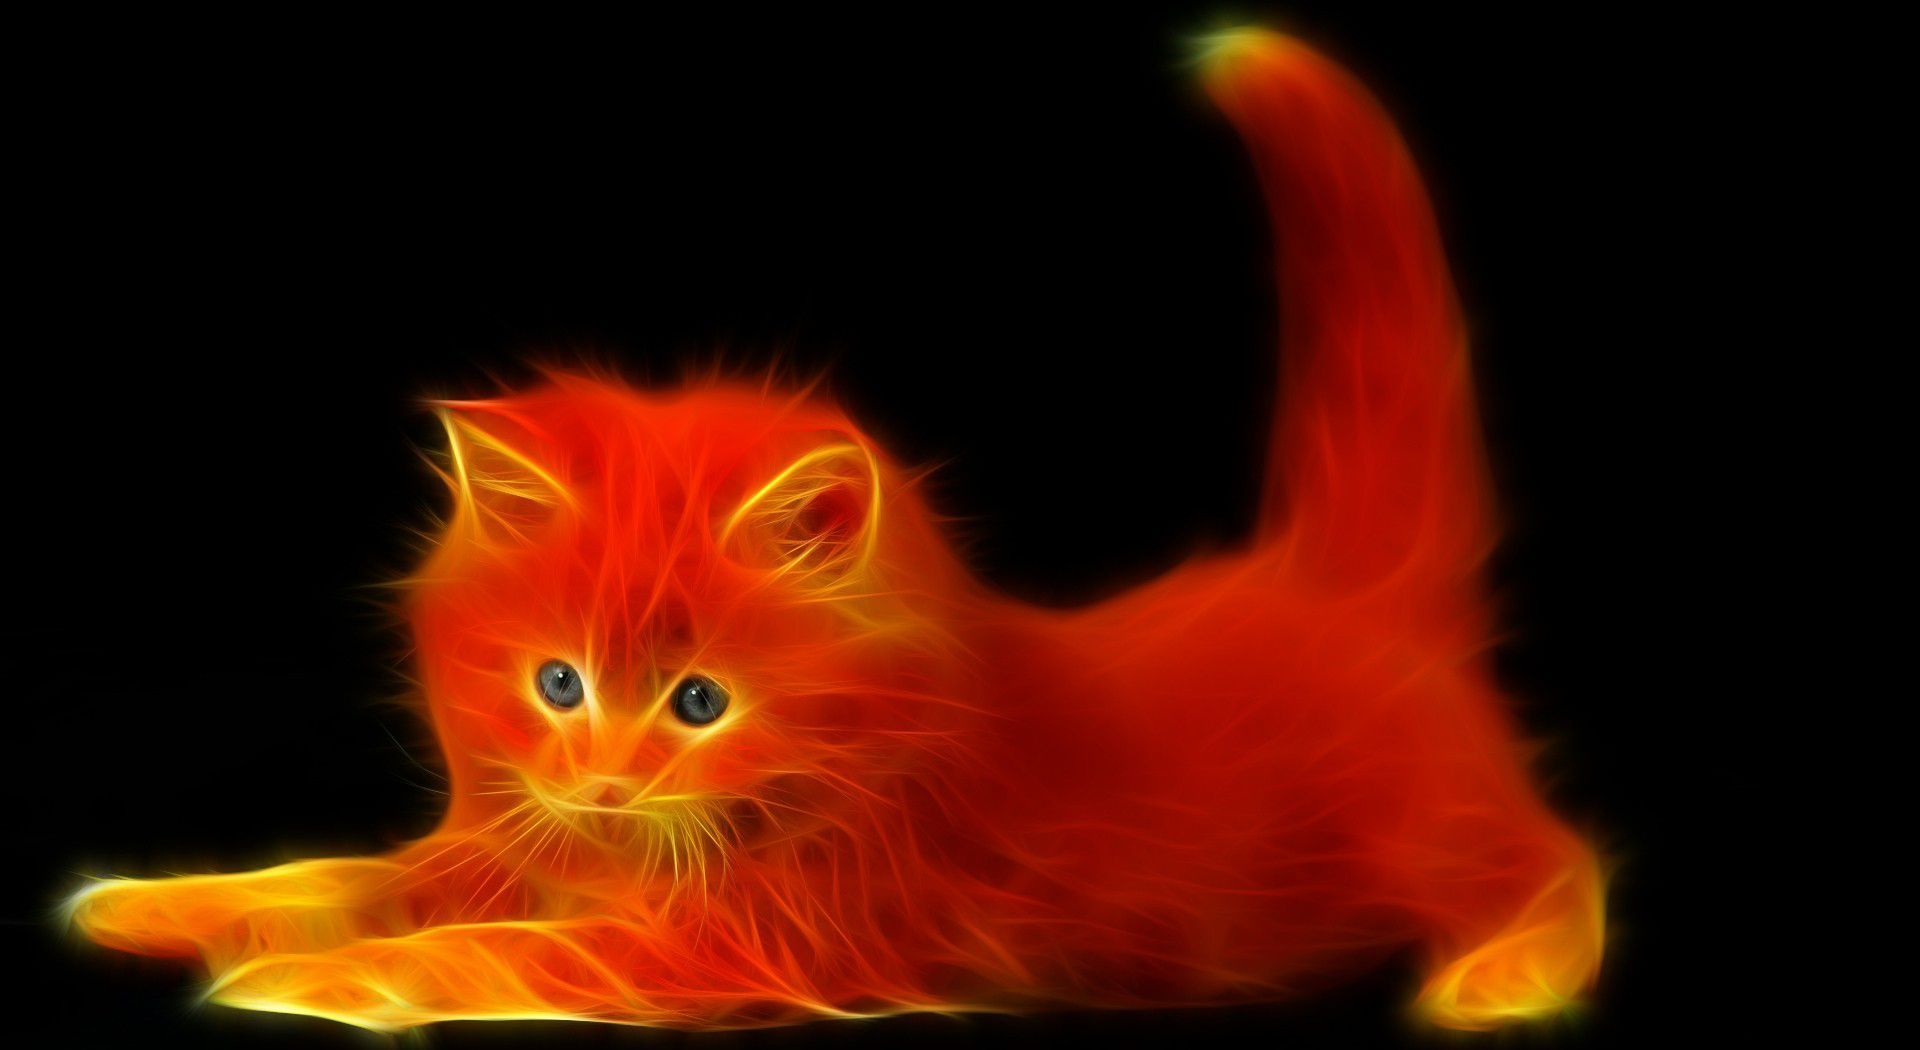 Fire Cat Wallpaper. Unusual animals, Cats, Cat wallpaper